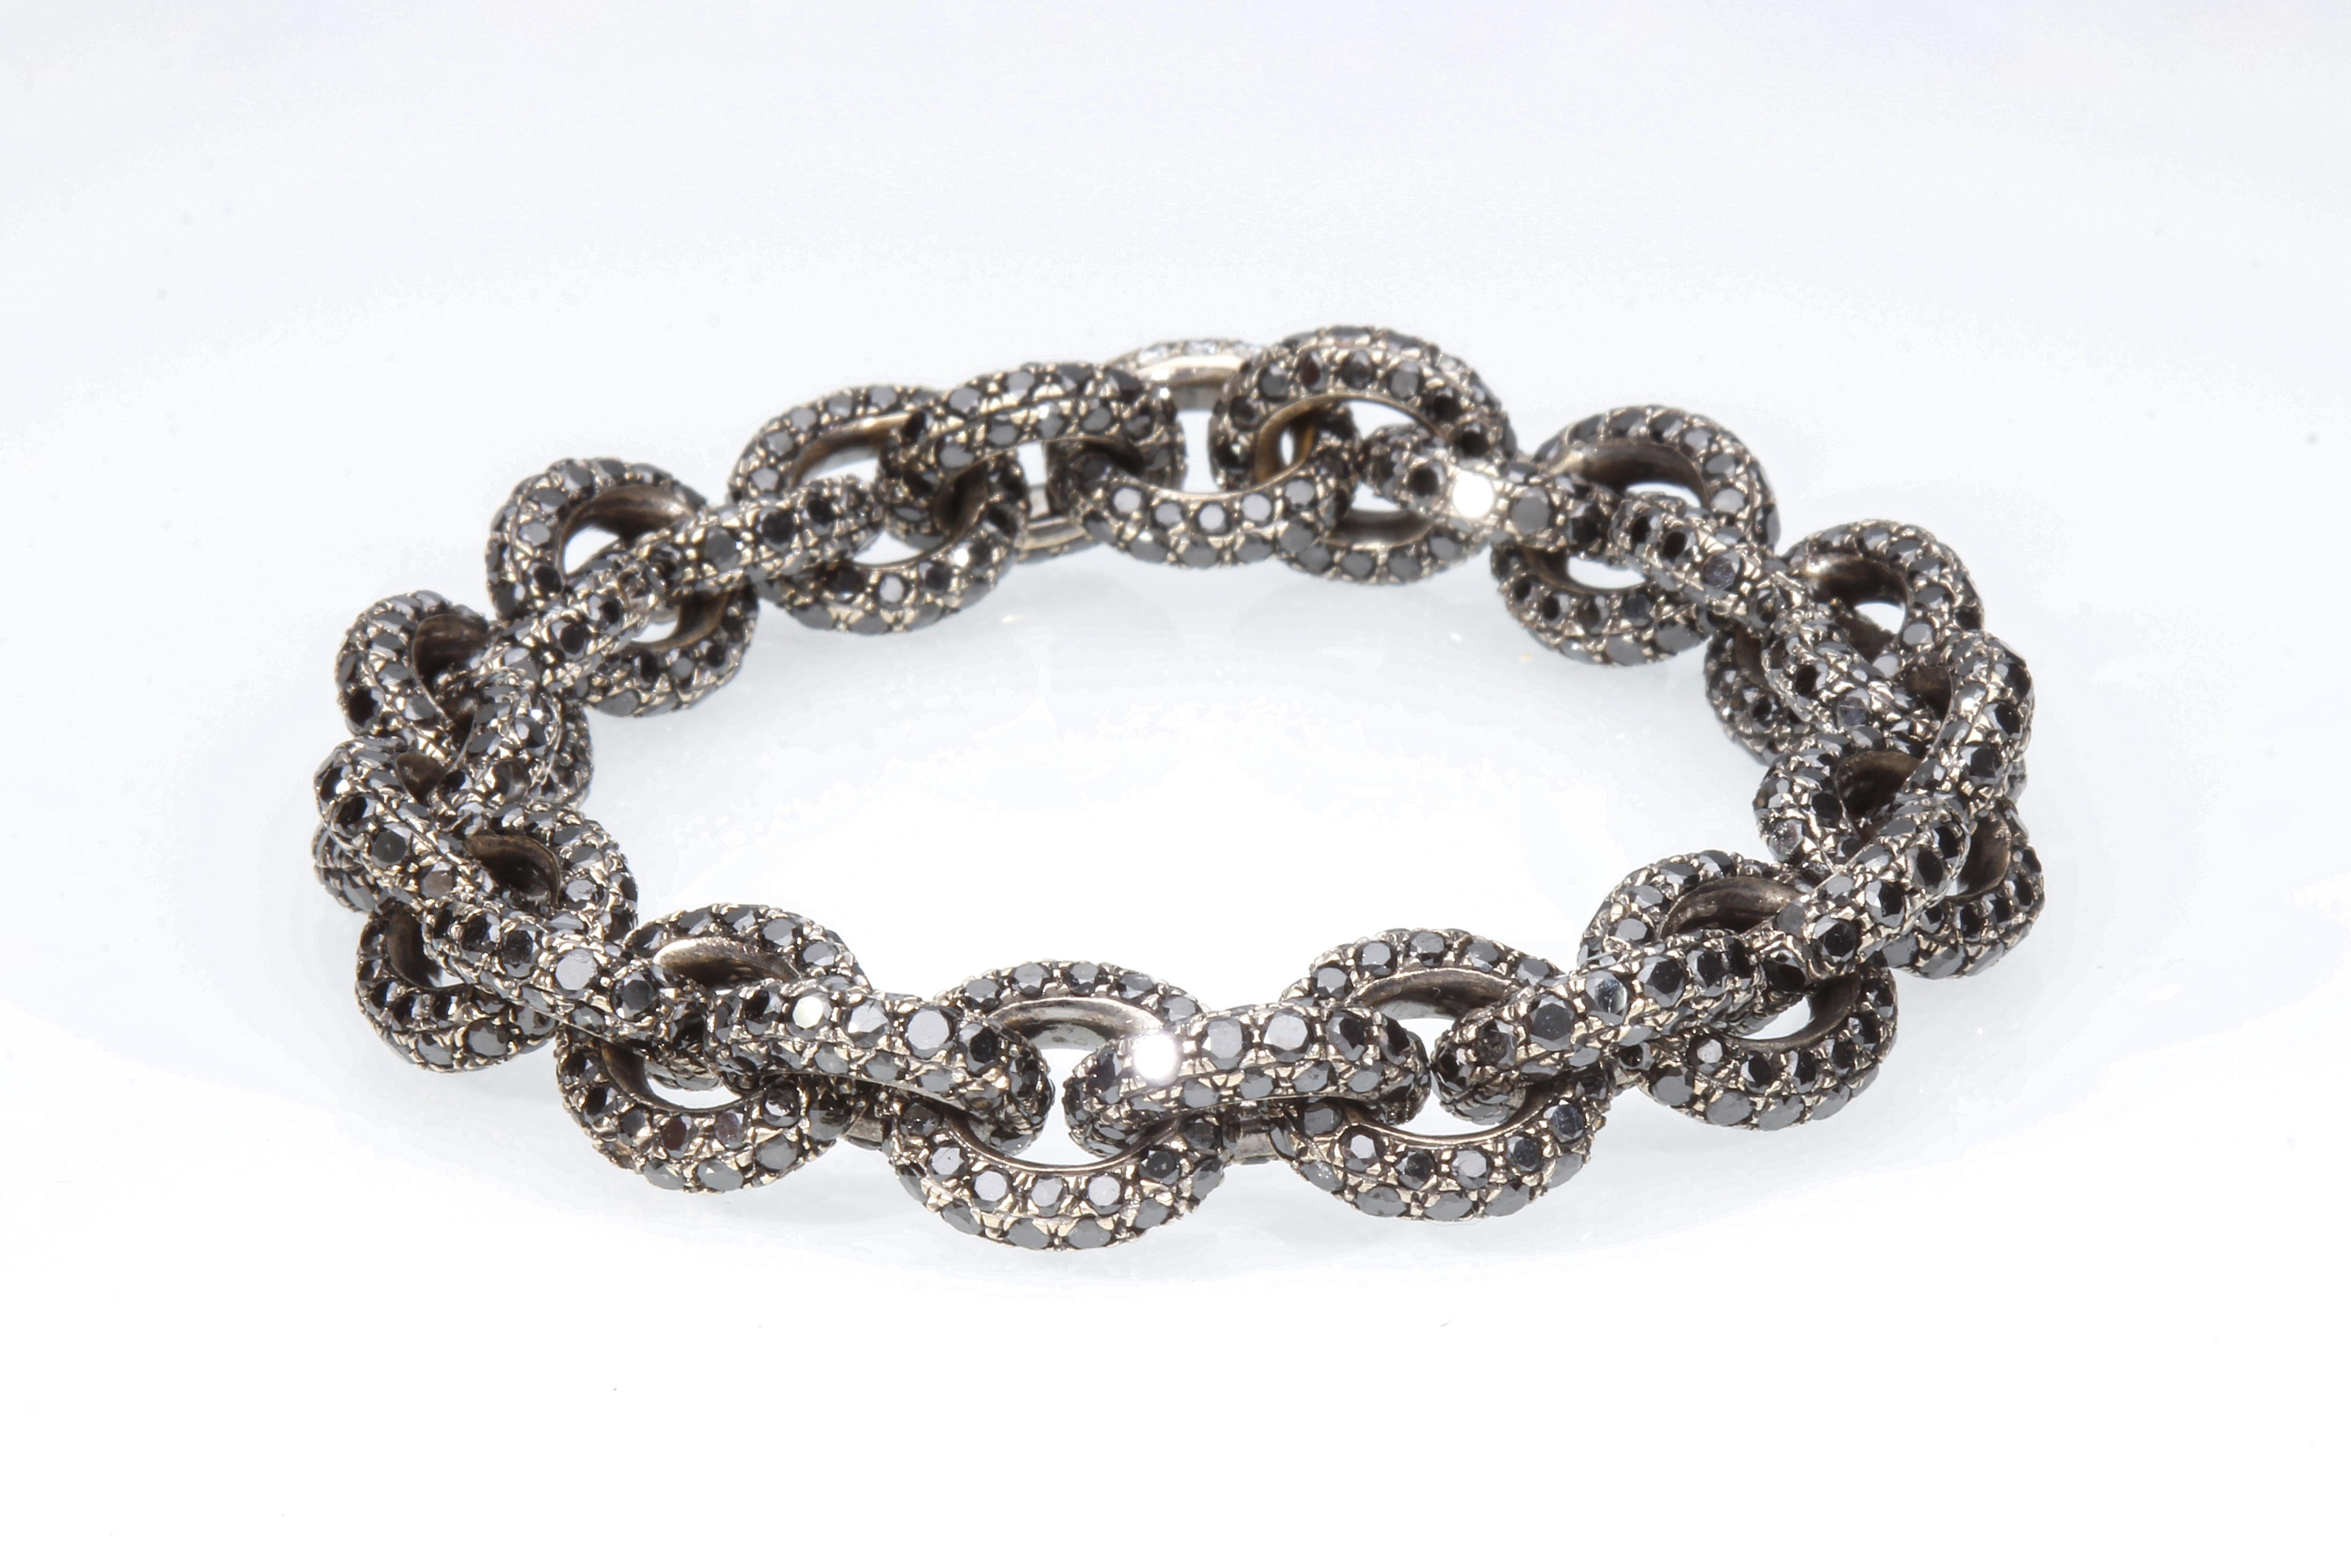 Le bracelet est un modèle à chaîne, et se compose de vingt-sept maillons ronds sur lesquels sont sertis 33,50 ct de diamants noirs. Le bracelet est en or blanc 18 Kt bruni noir.
La fermeture du bracelet est parfaitement invisible, pour pouvoir la